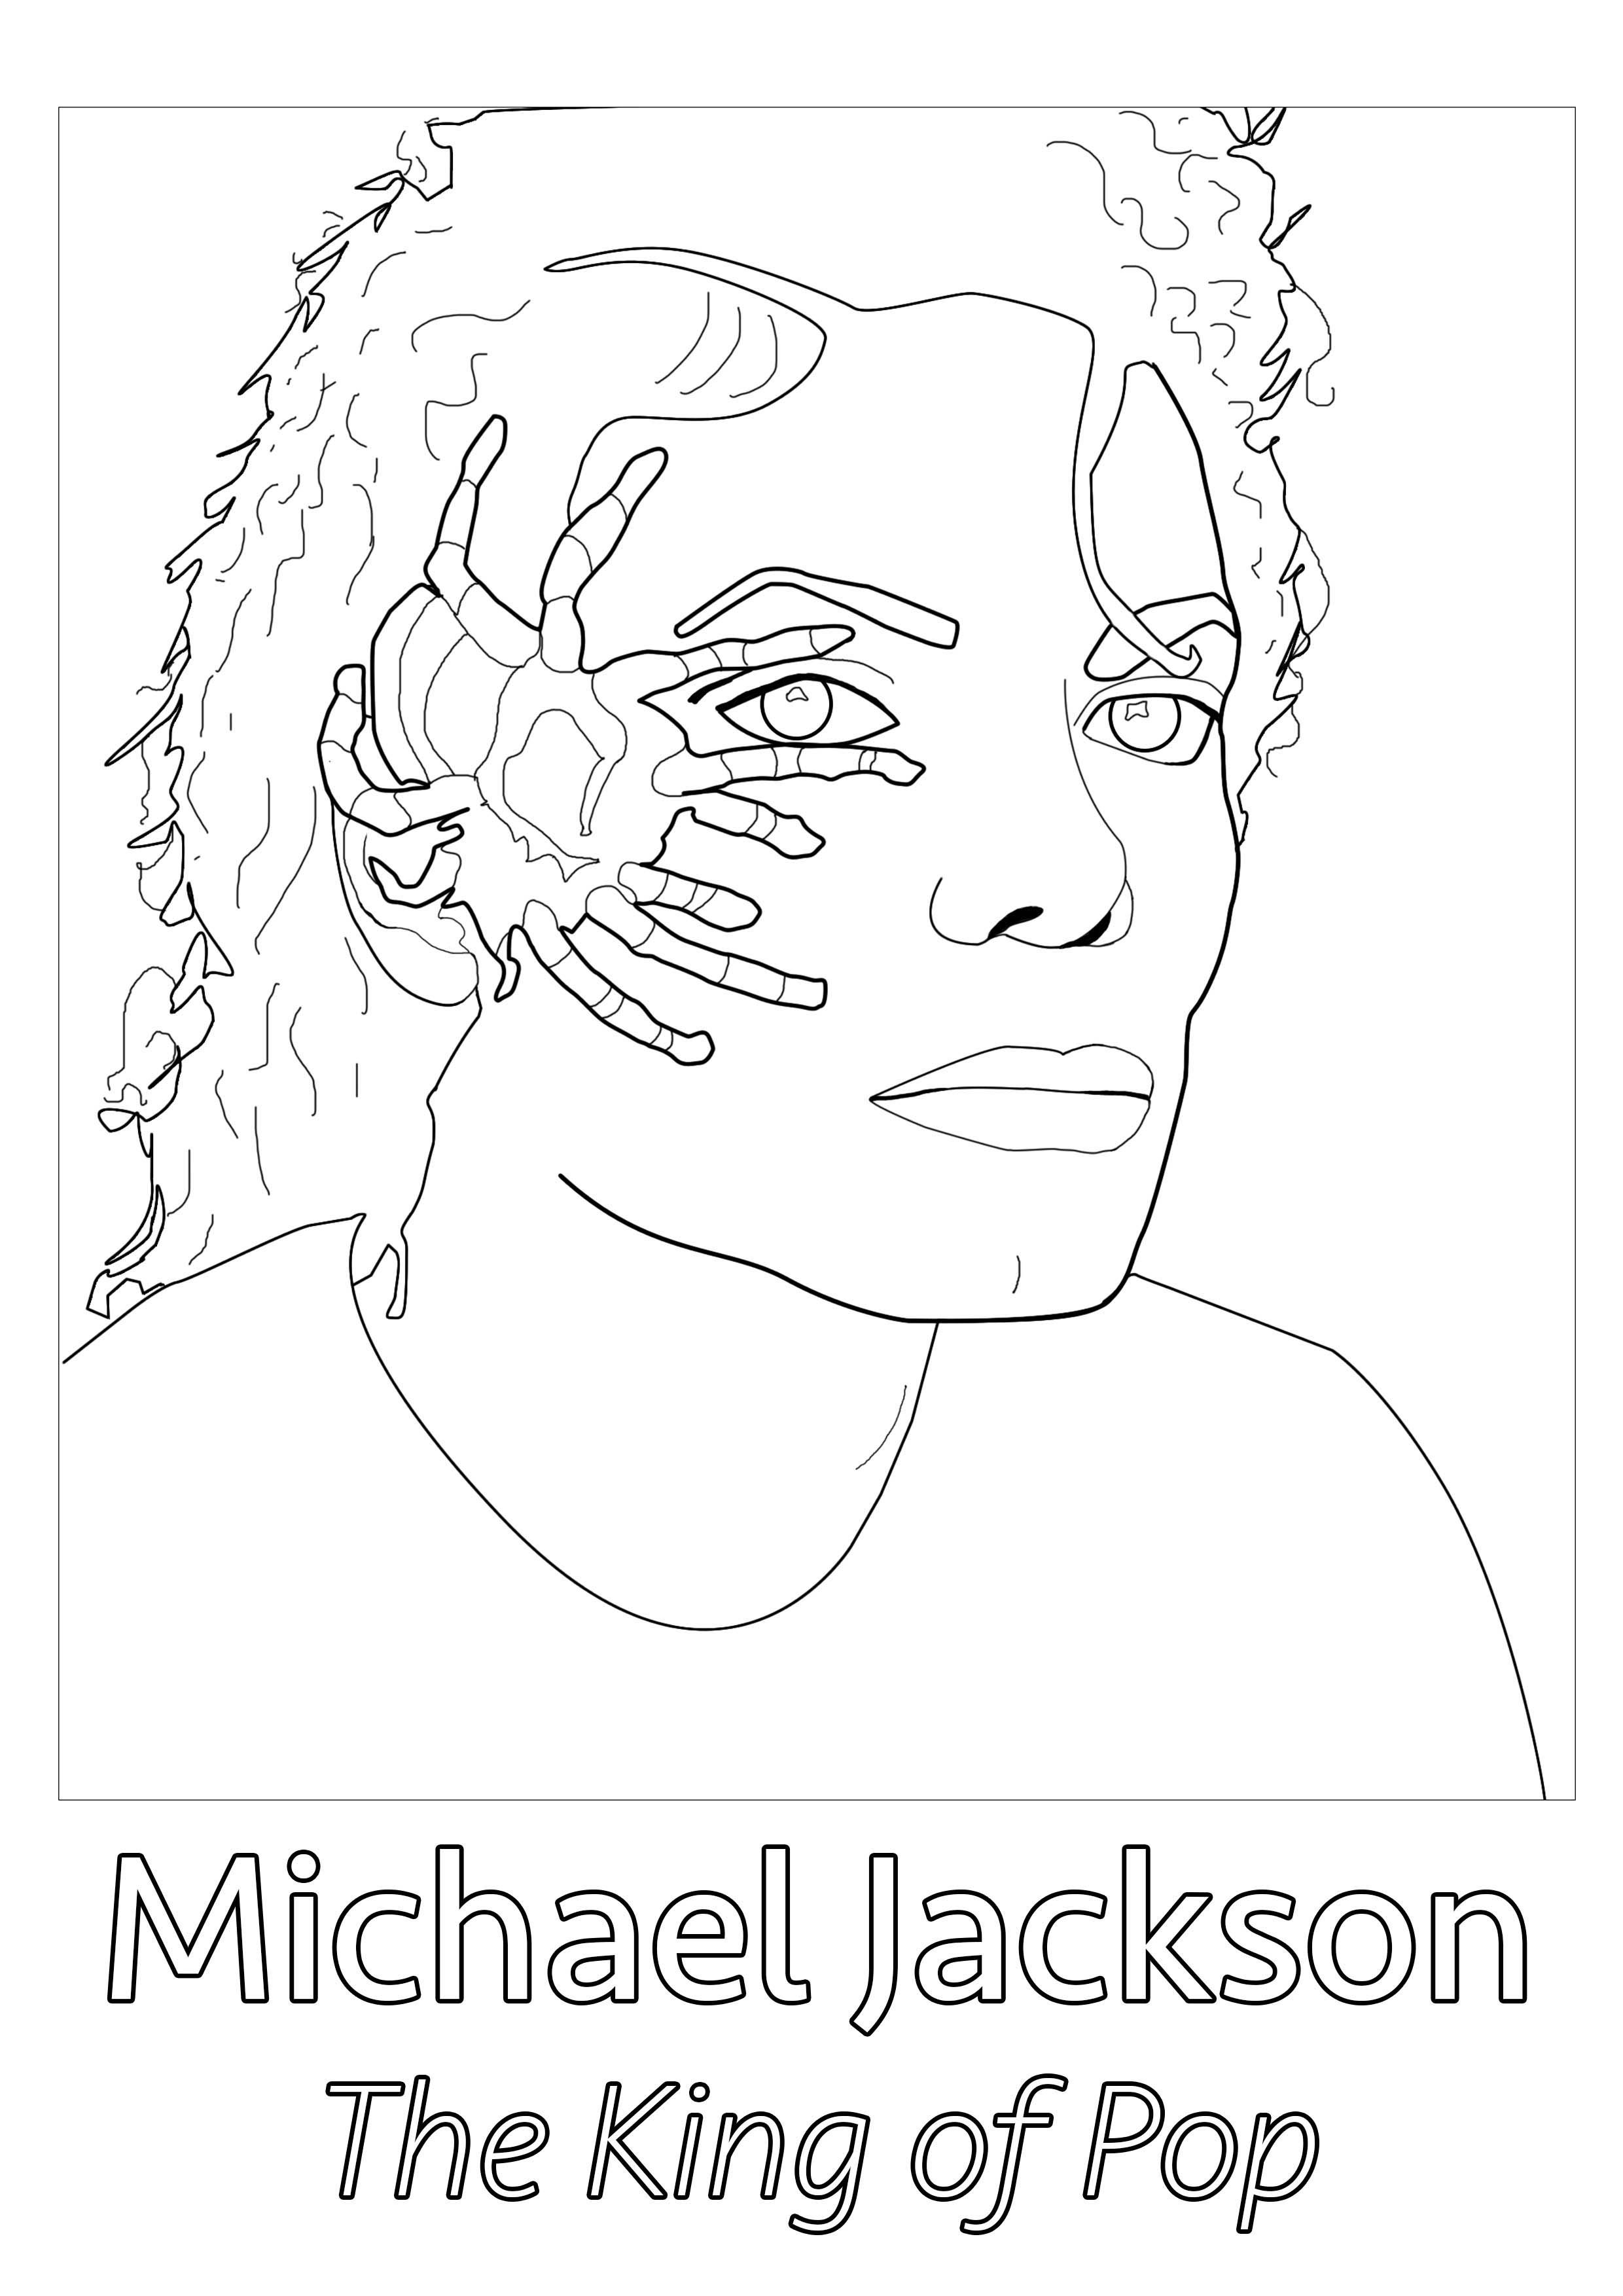 Dibujo original creado a partir de una foto rara de Michael Jackson, con una araña en la cara